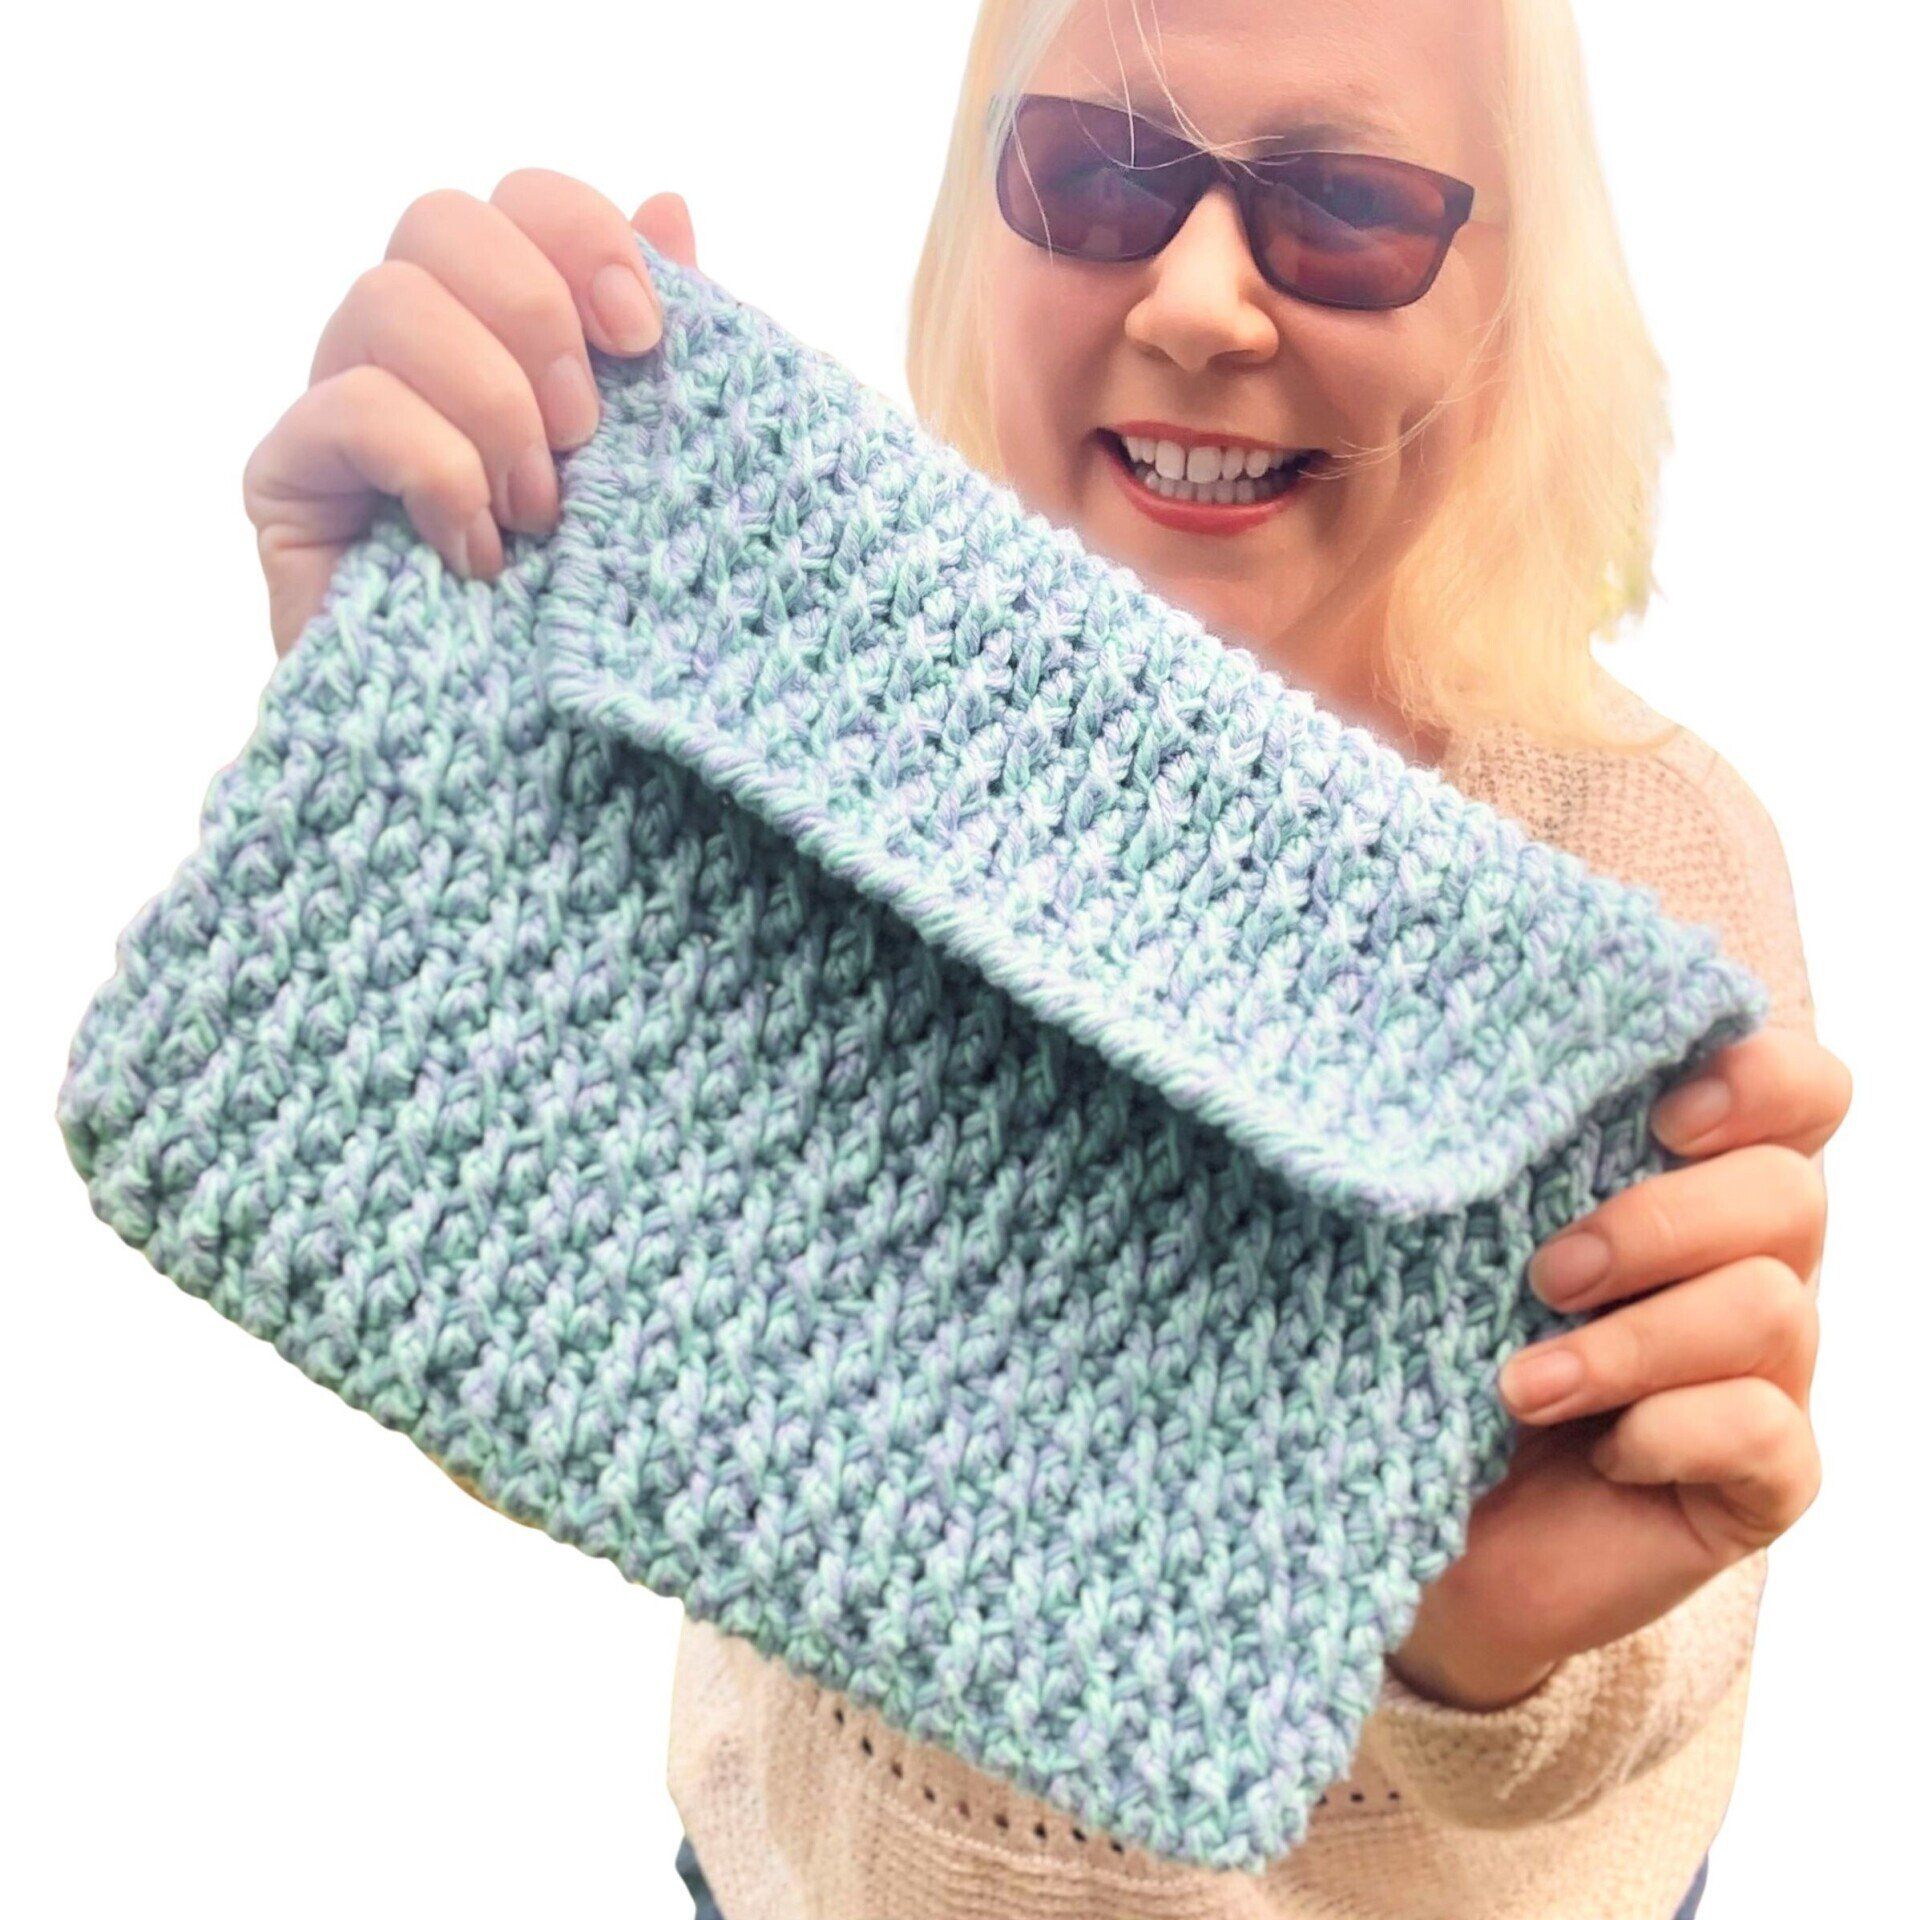 crochet+clutch+bag+free+pattern 1920w